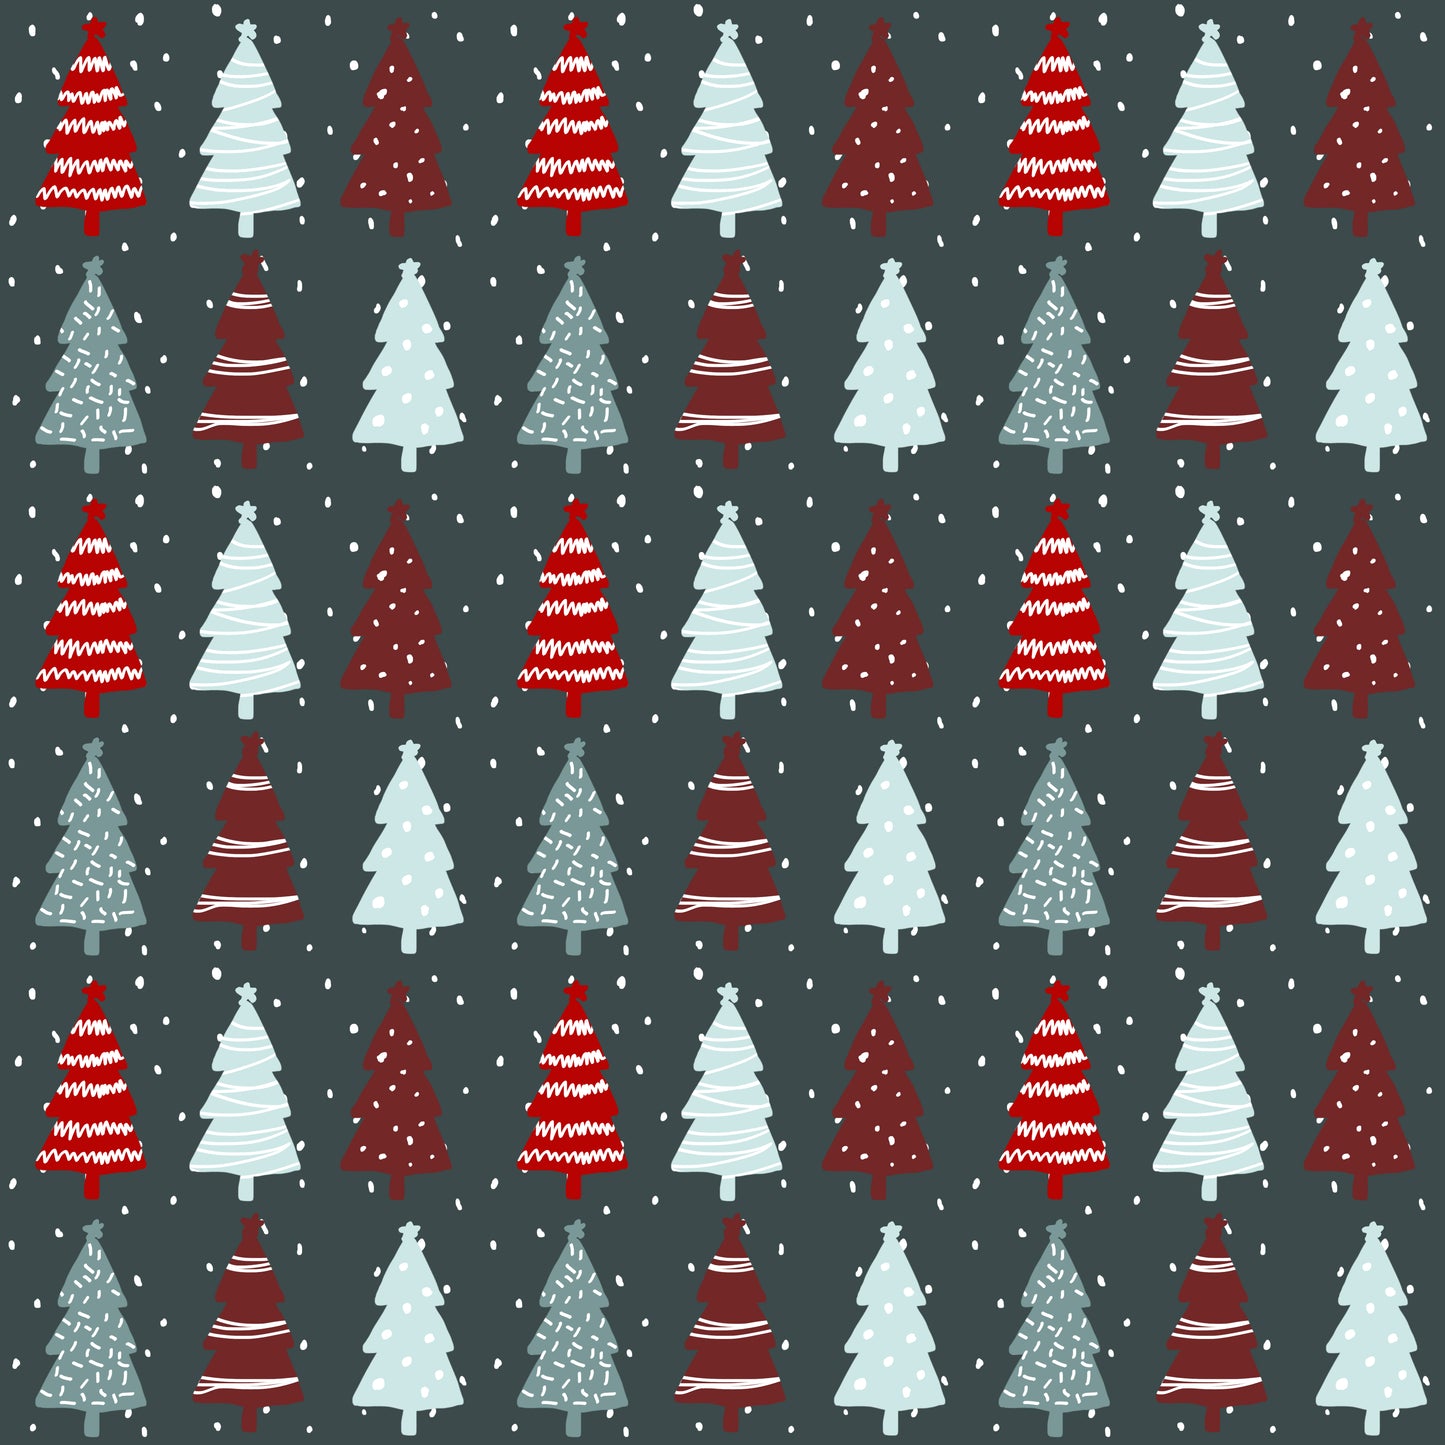 Minky Blanket- Holidays/Seasons